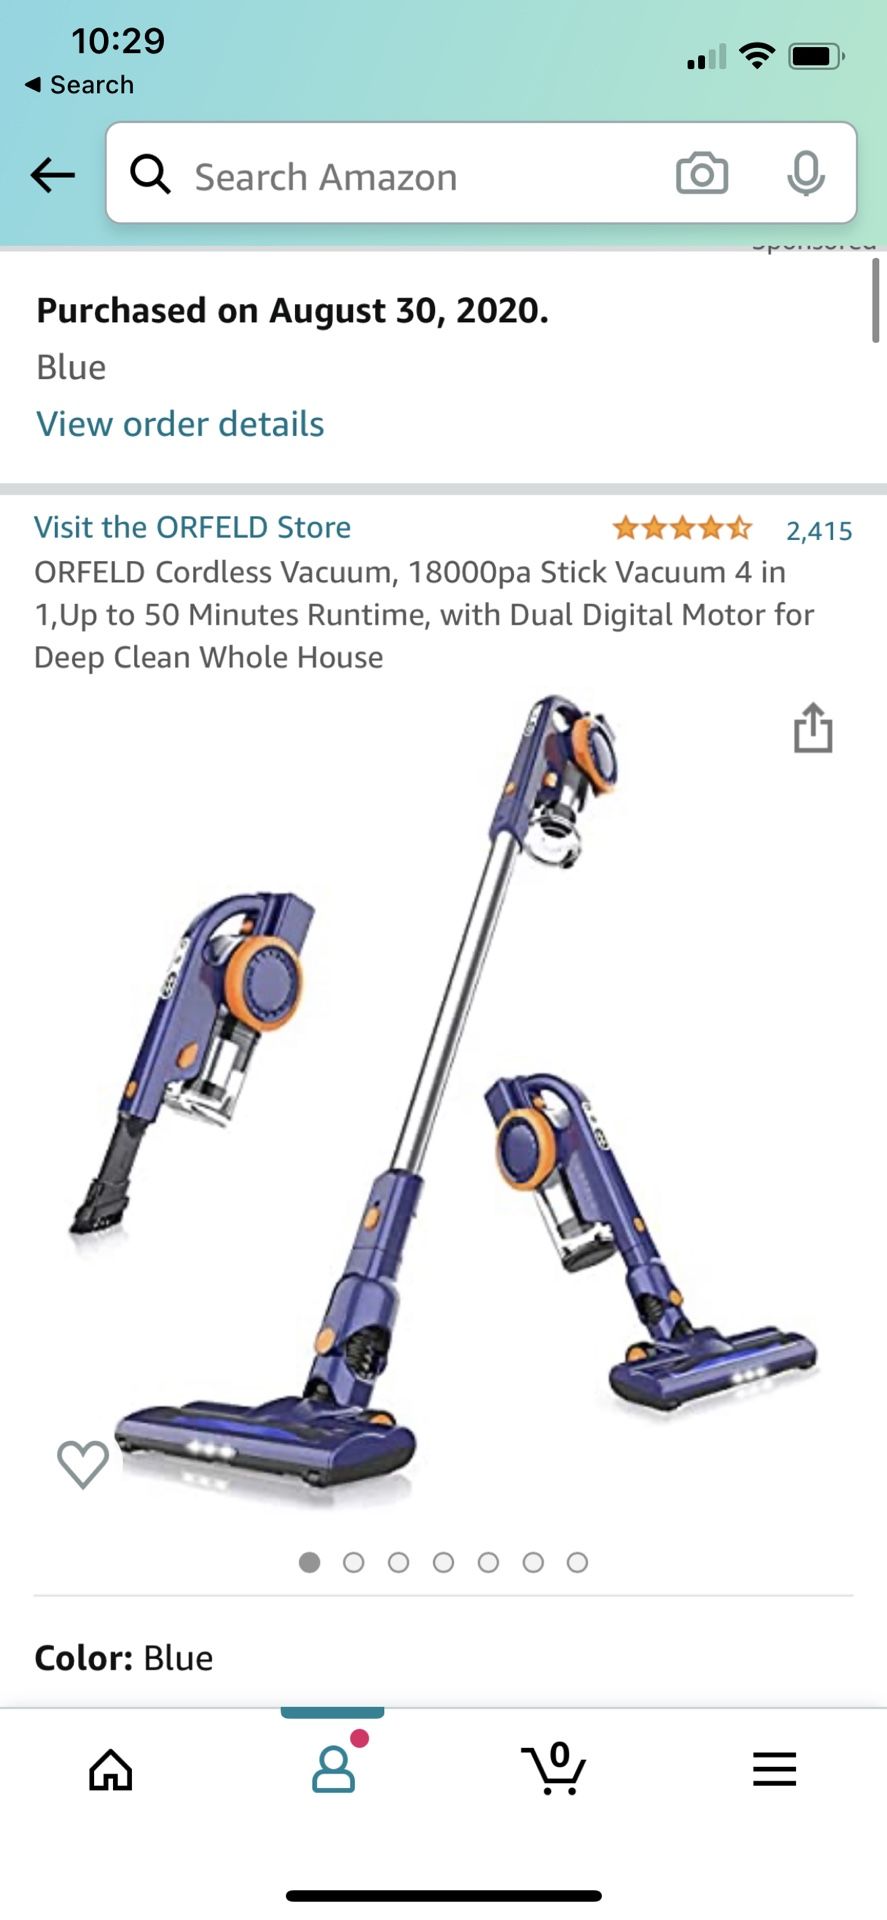 ORFELD Cordless Vacuum, 18000pa Stick Vacuum